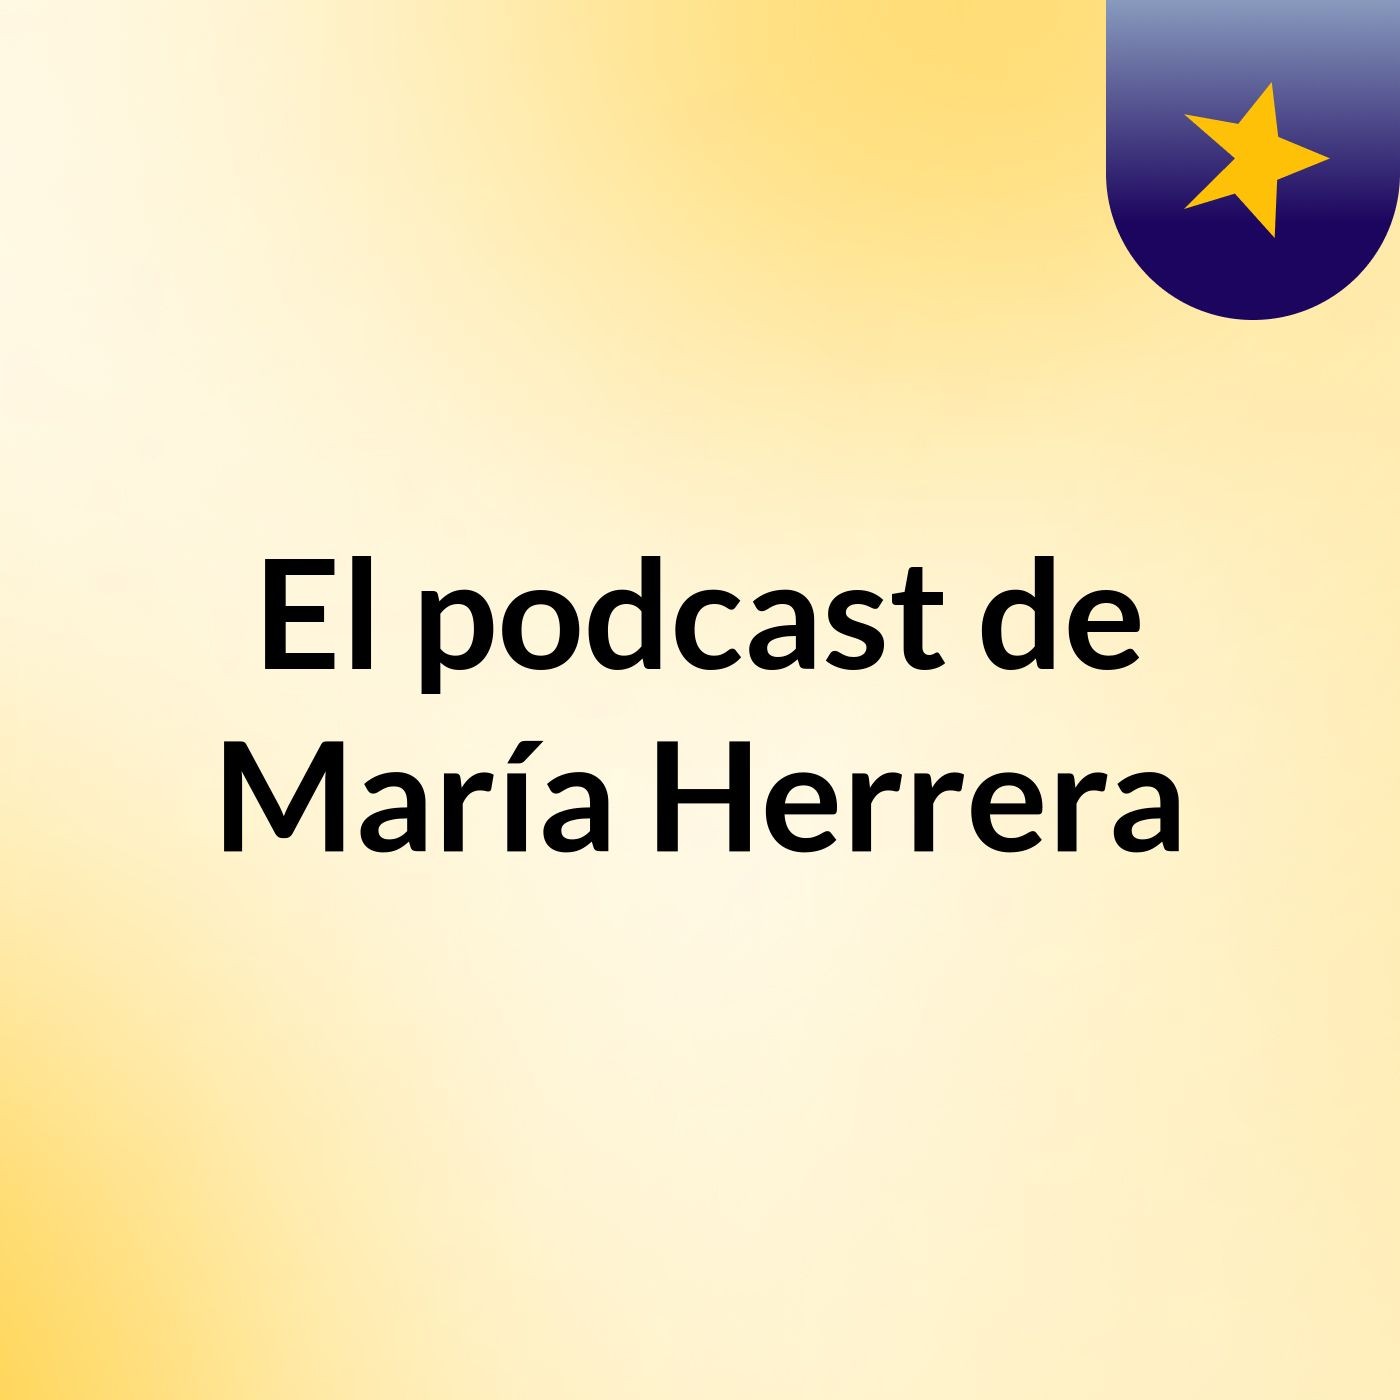 Episodio 4 - El podcast de María Herrera